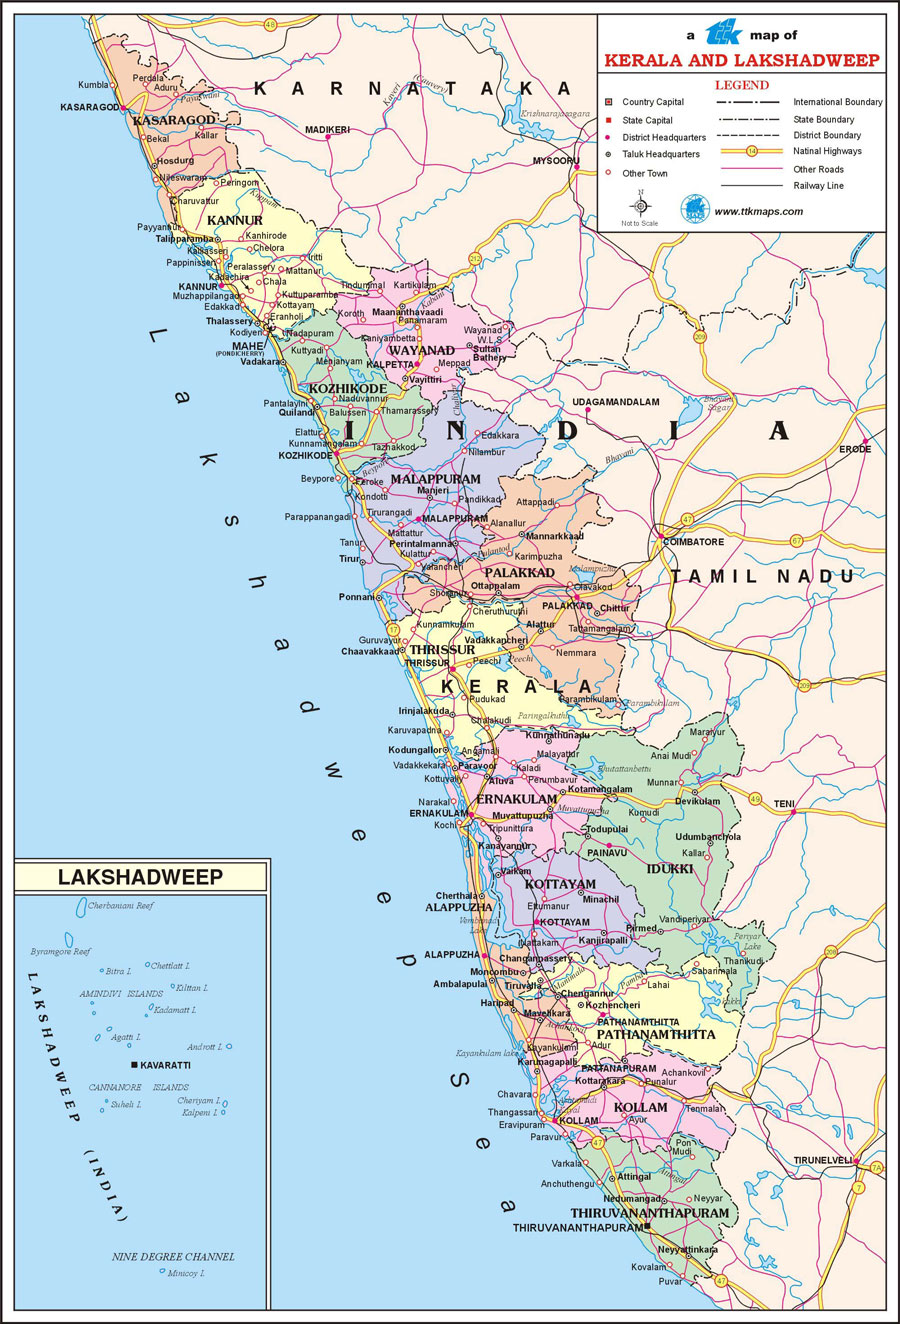 Varanasi+tourism+map